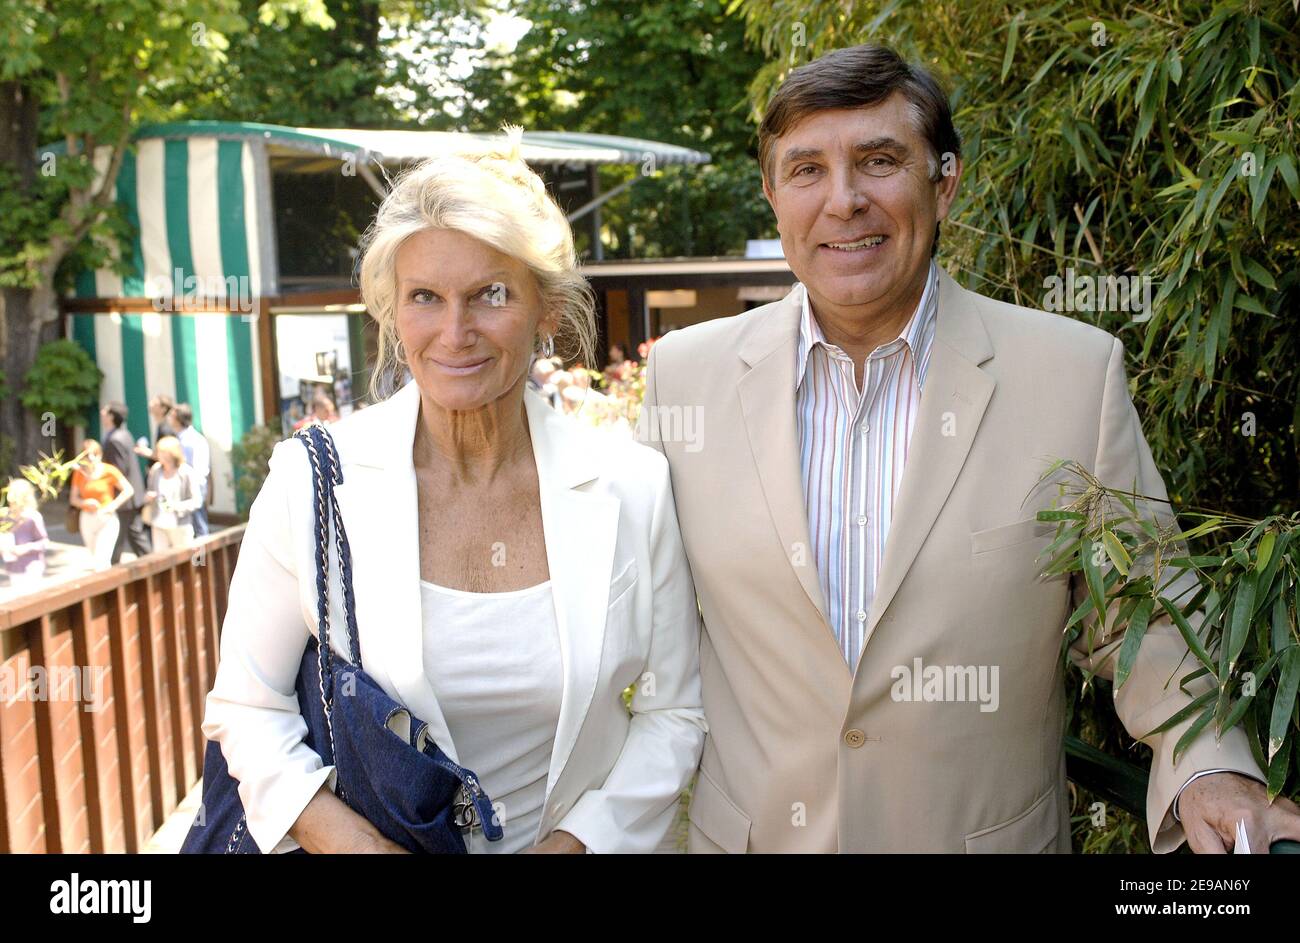 Jean-Pierre Foucault et sa femme Evelyne arrivent dans le 'Village VIP'  lors du tournoi de tennis ouvert en France qui s'est tenu au stade Roland  Garros à Paris, en France, le 7